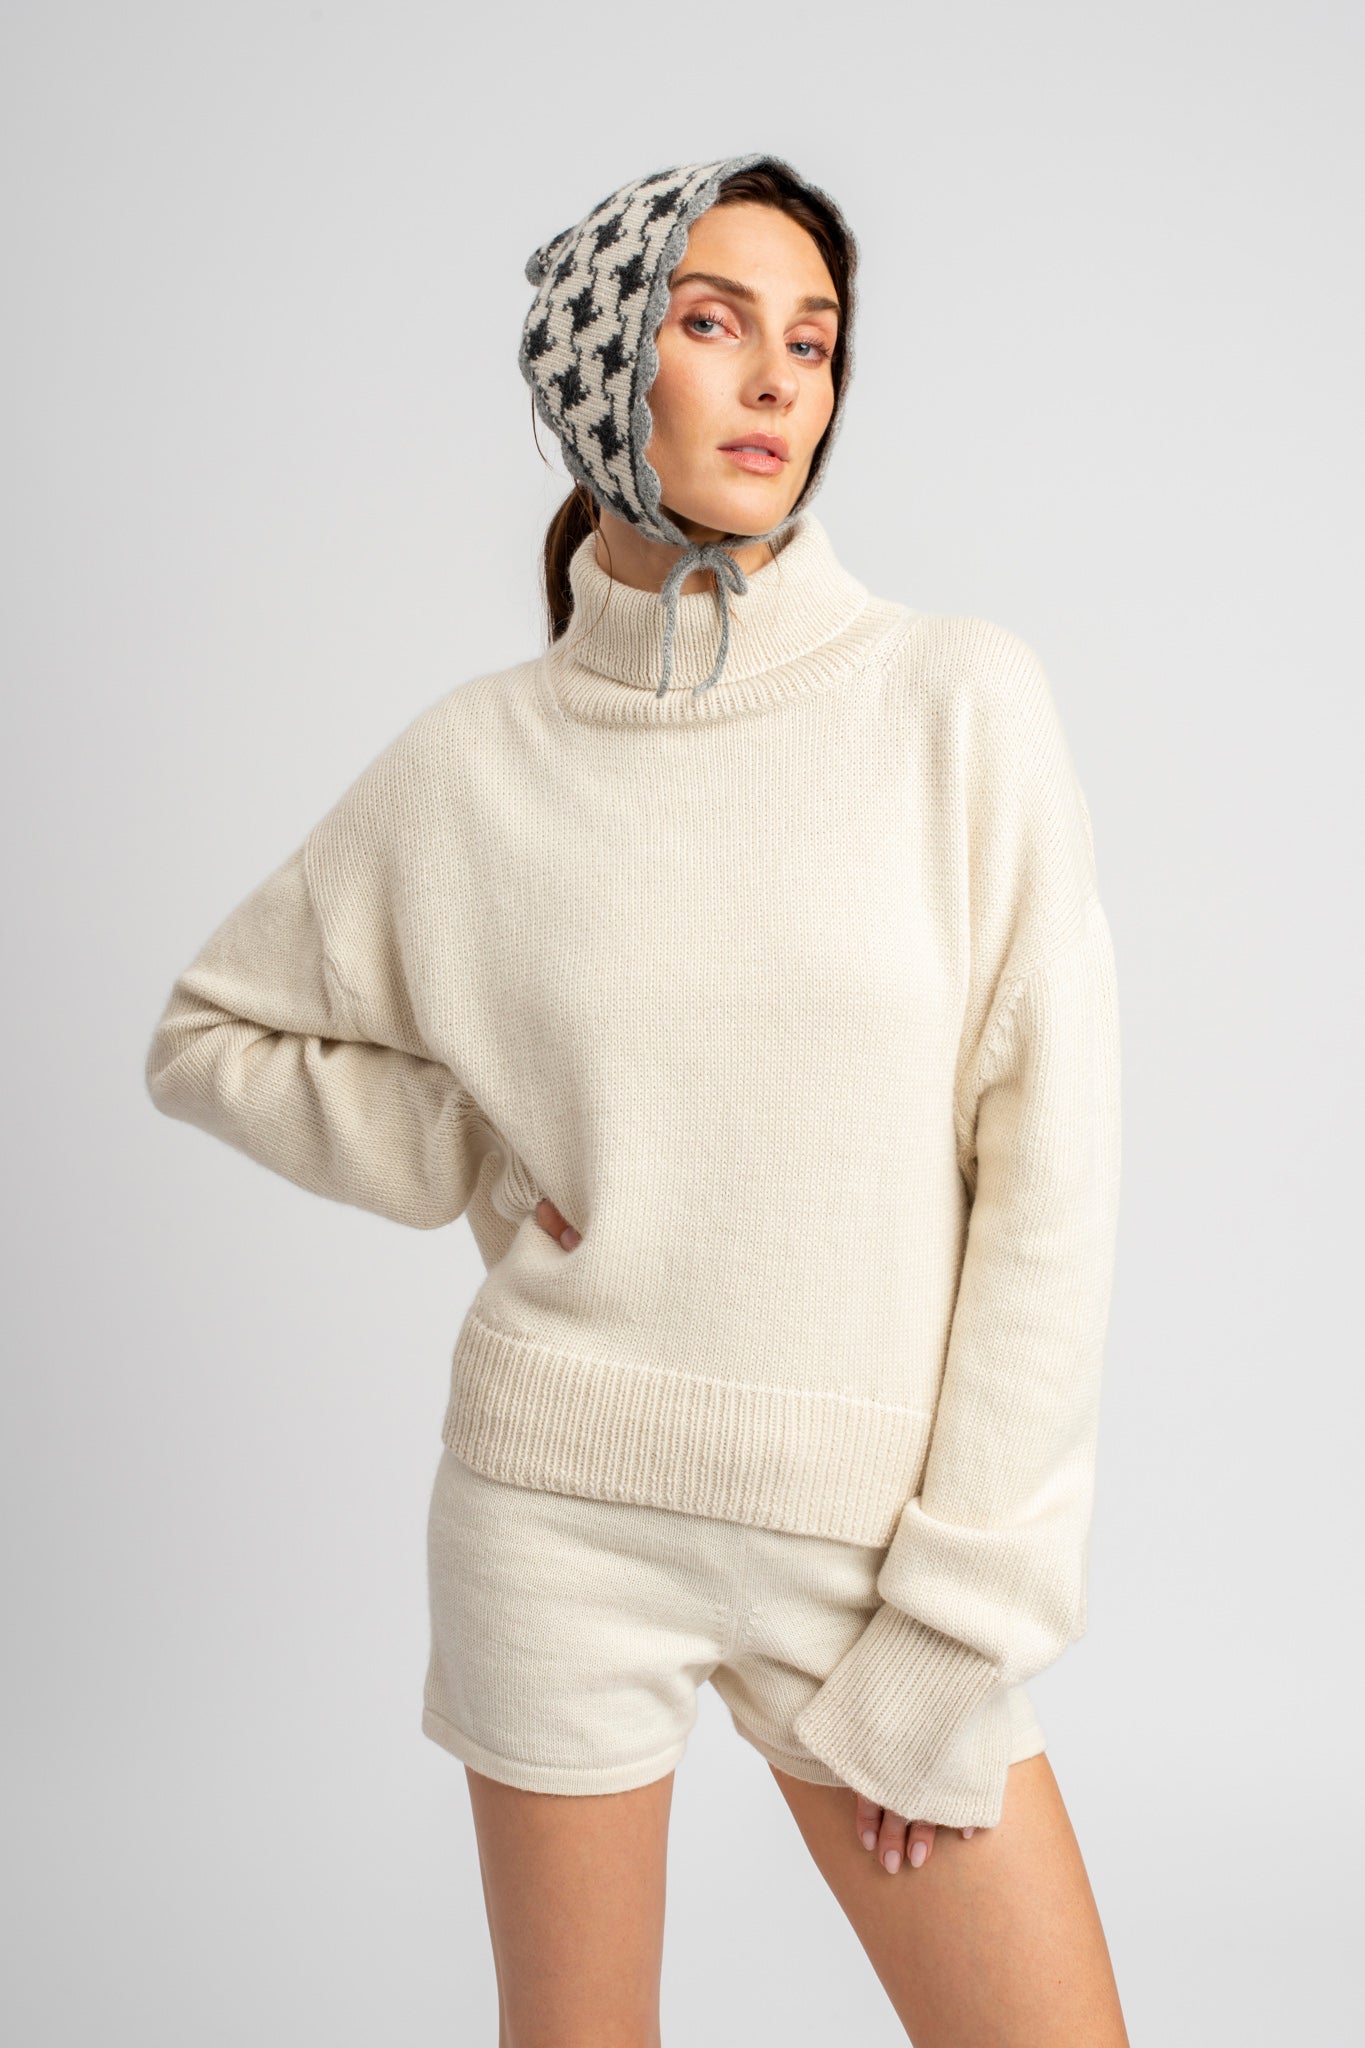 Model wearing turtleneck oversized sweater in white alpaca wool, standing